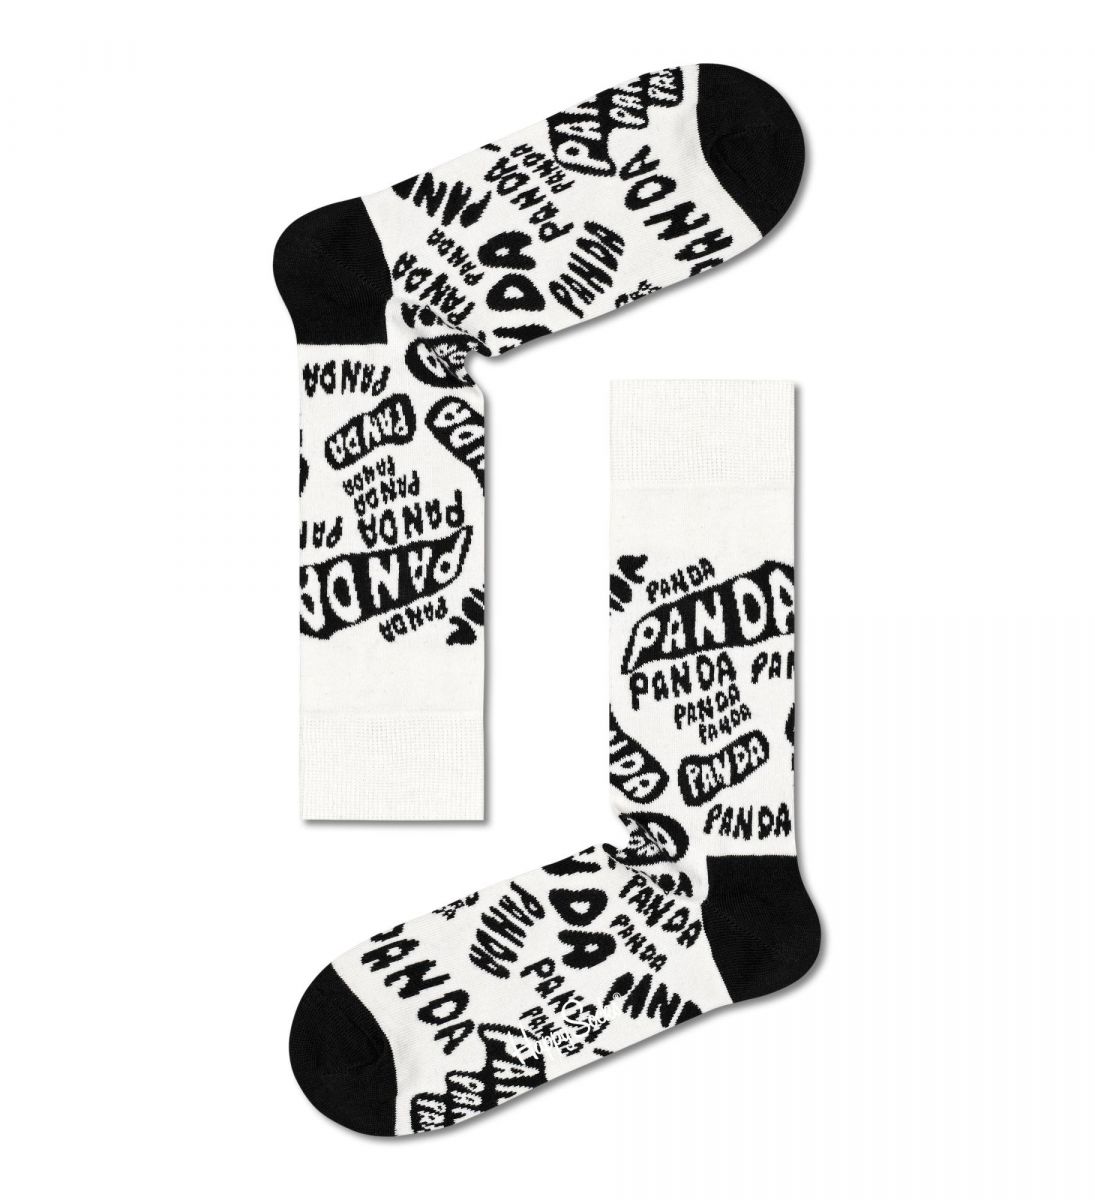 Носки унисекс Panda-Panda-Panda Sock.